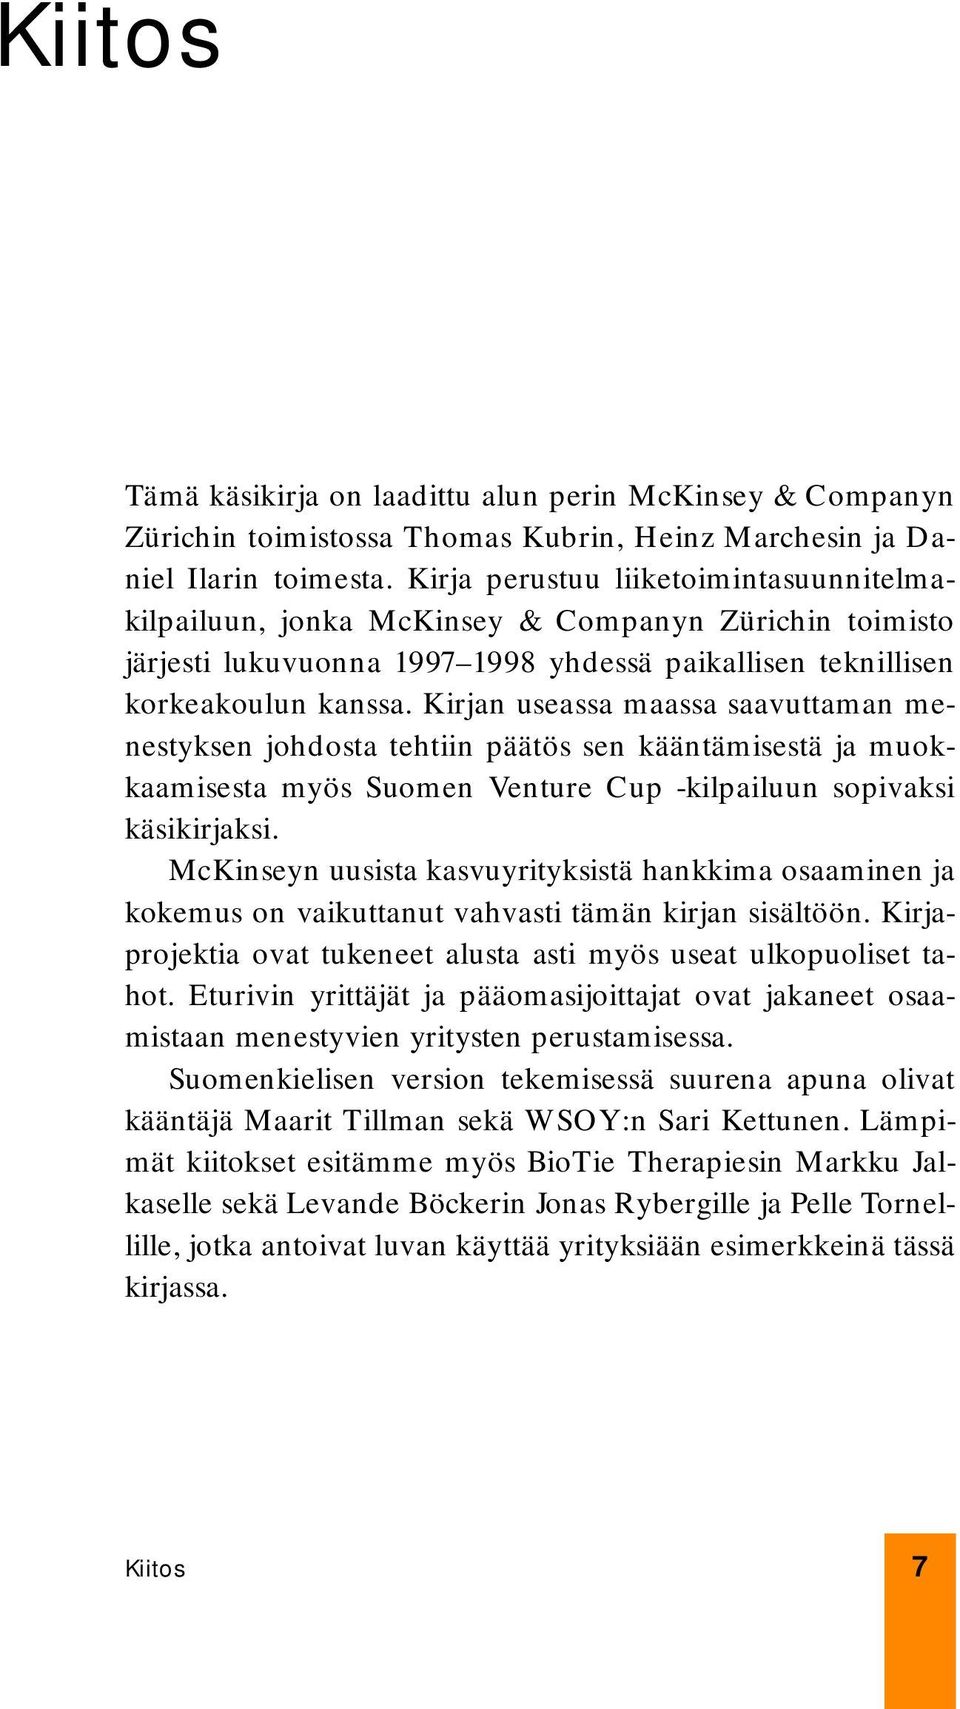 Kirjan useassa maassa saavuttaman menestyksen johdosta tehtiin päätös sen kääntämisestä ja muokkaamisesta myös Suomen Venture Cup -kilpailuun sopivaksi käsikirjaksi.